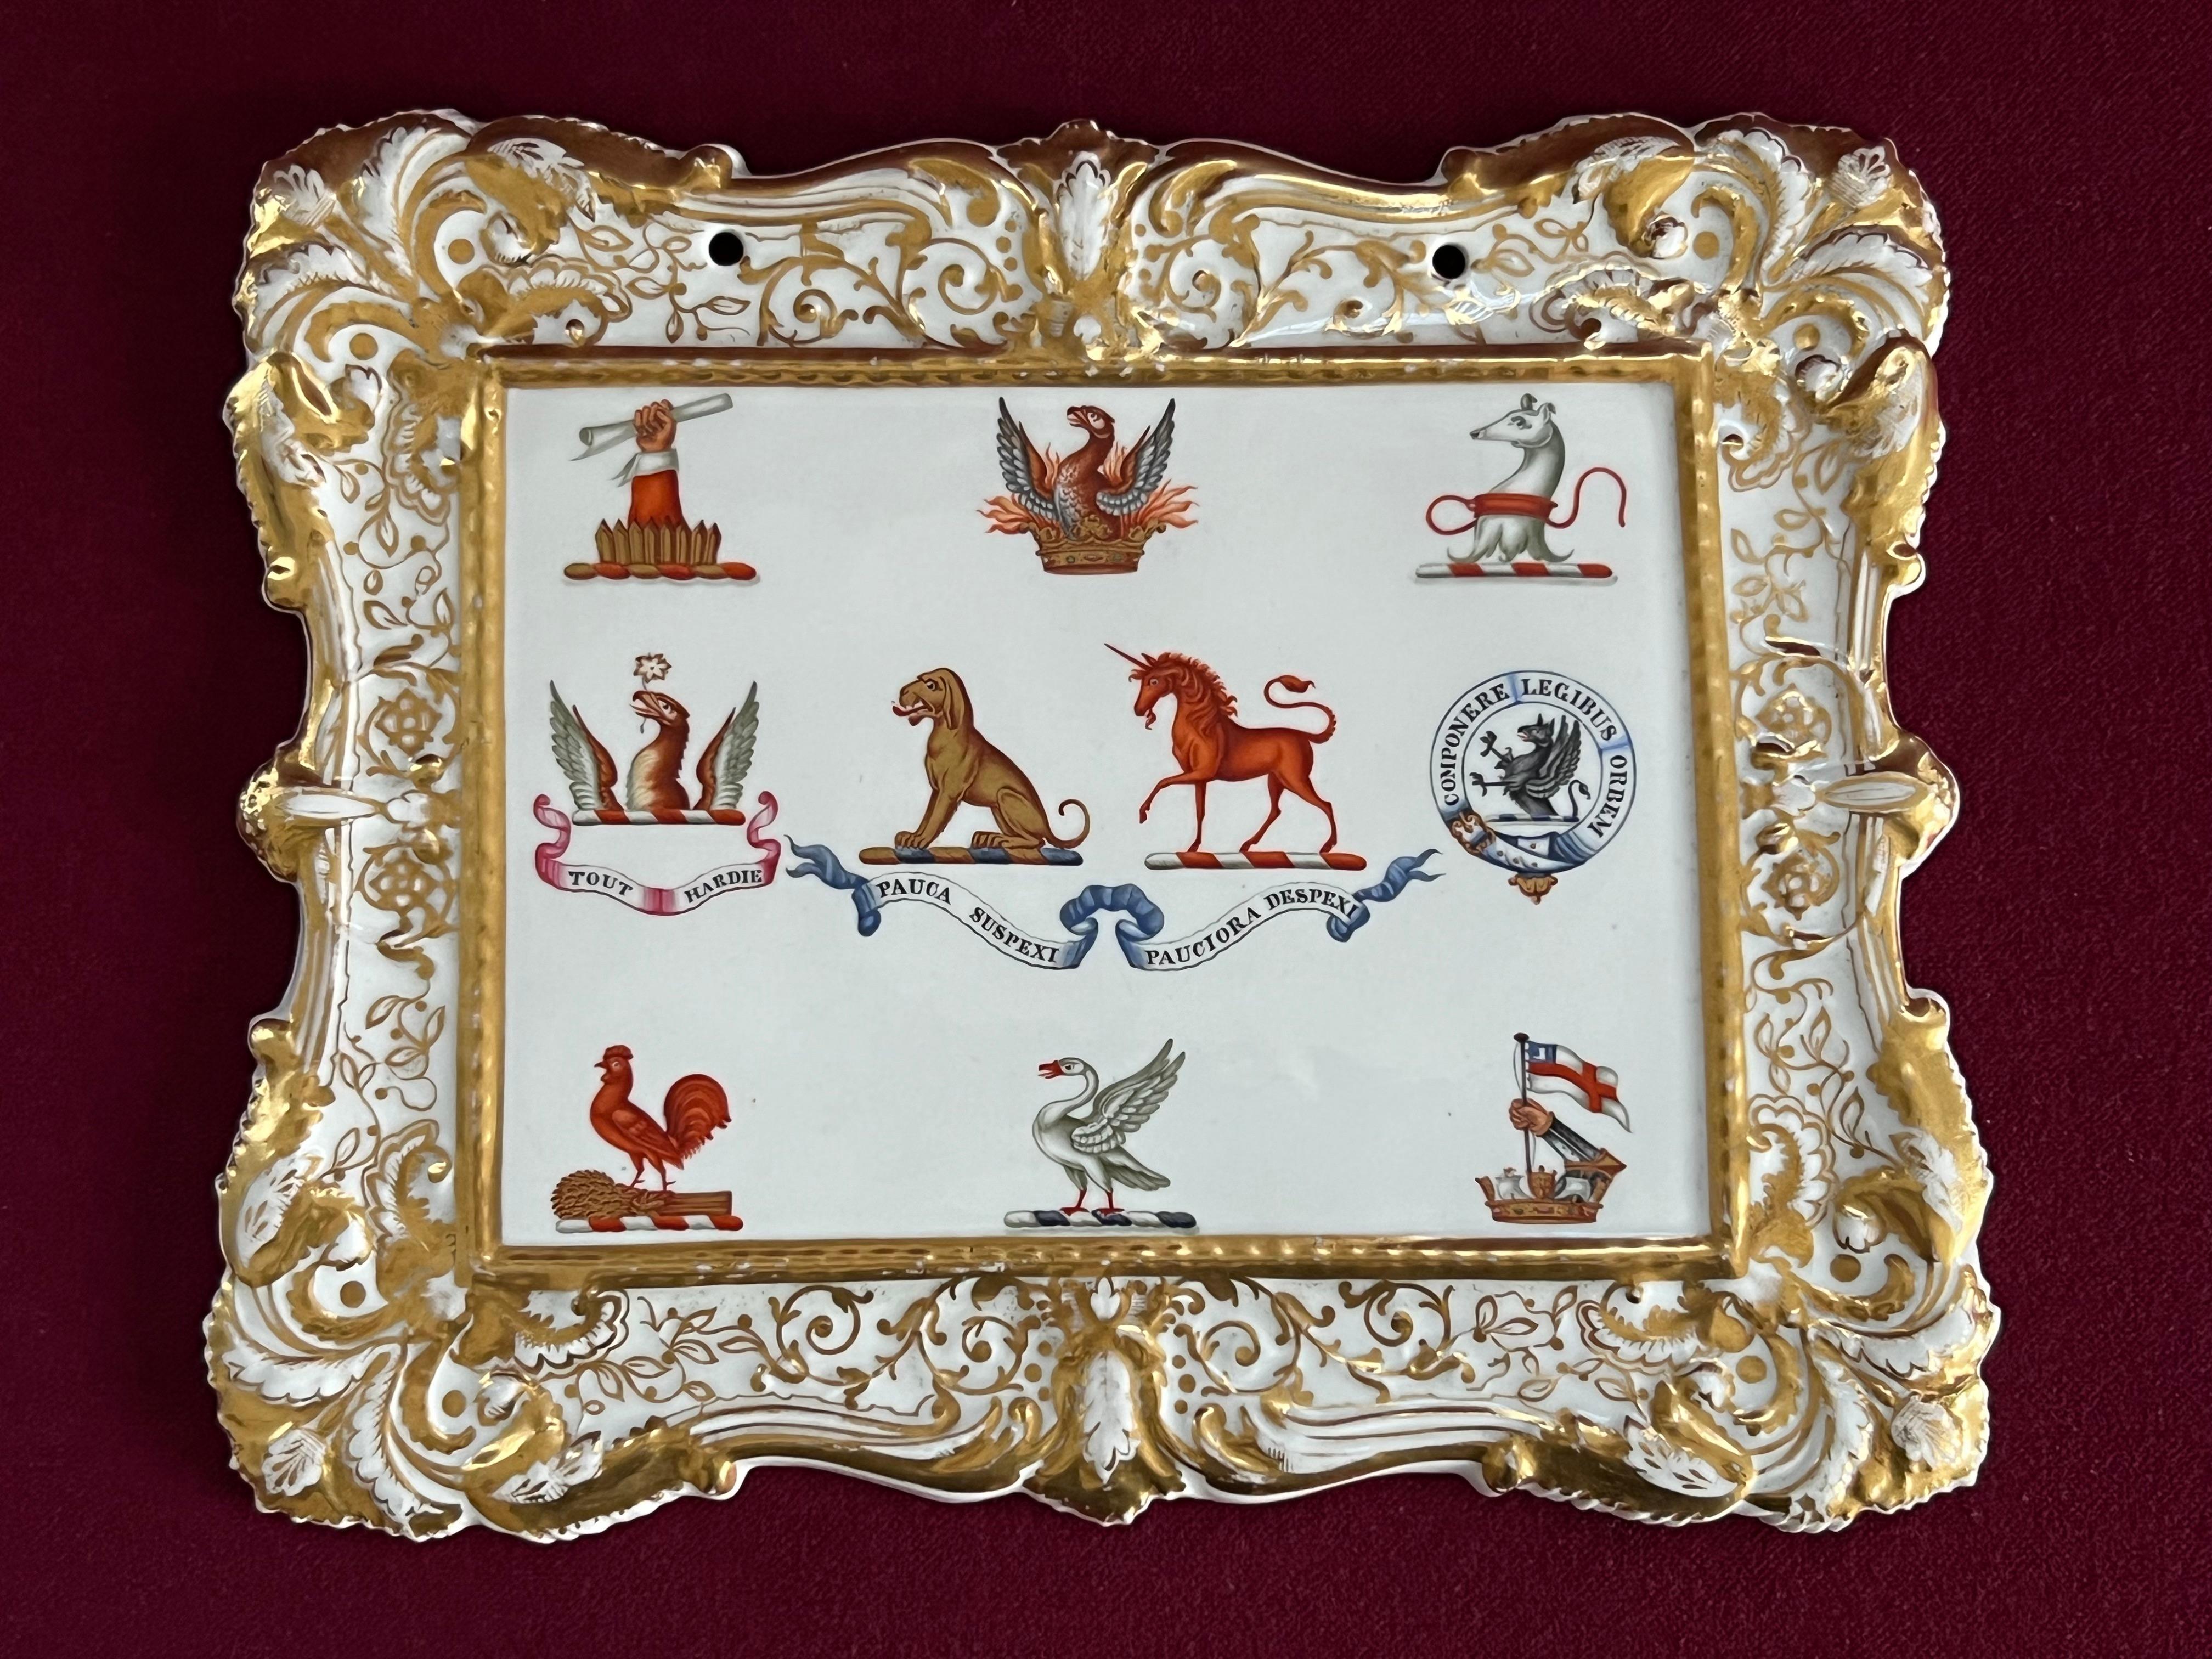 Ein Chamberlain & Co Worcester Amorial Crest Probe Plaque c.1840. Diese Plakette wurde wahrscheinlich im Ausstellungsraum von Chamberlain in der New Bond Street aufgehängt, um die verschiedenen Wappen zu veranschaulichen, die einer Sonderbestellung